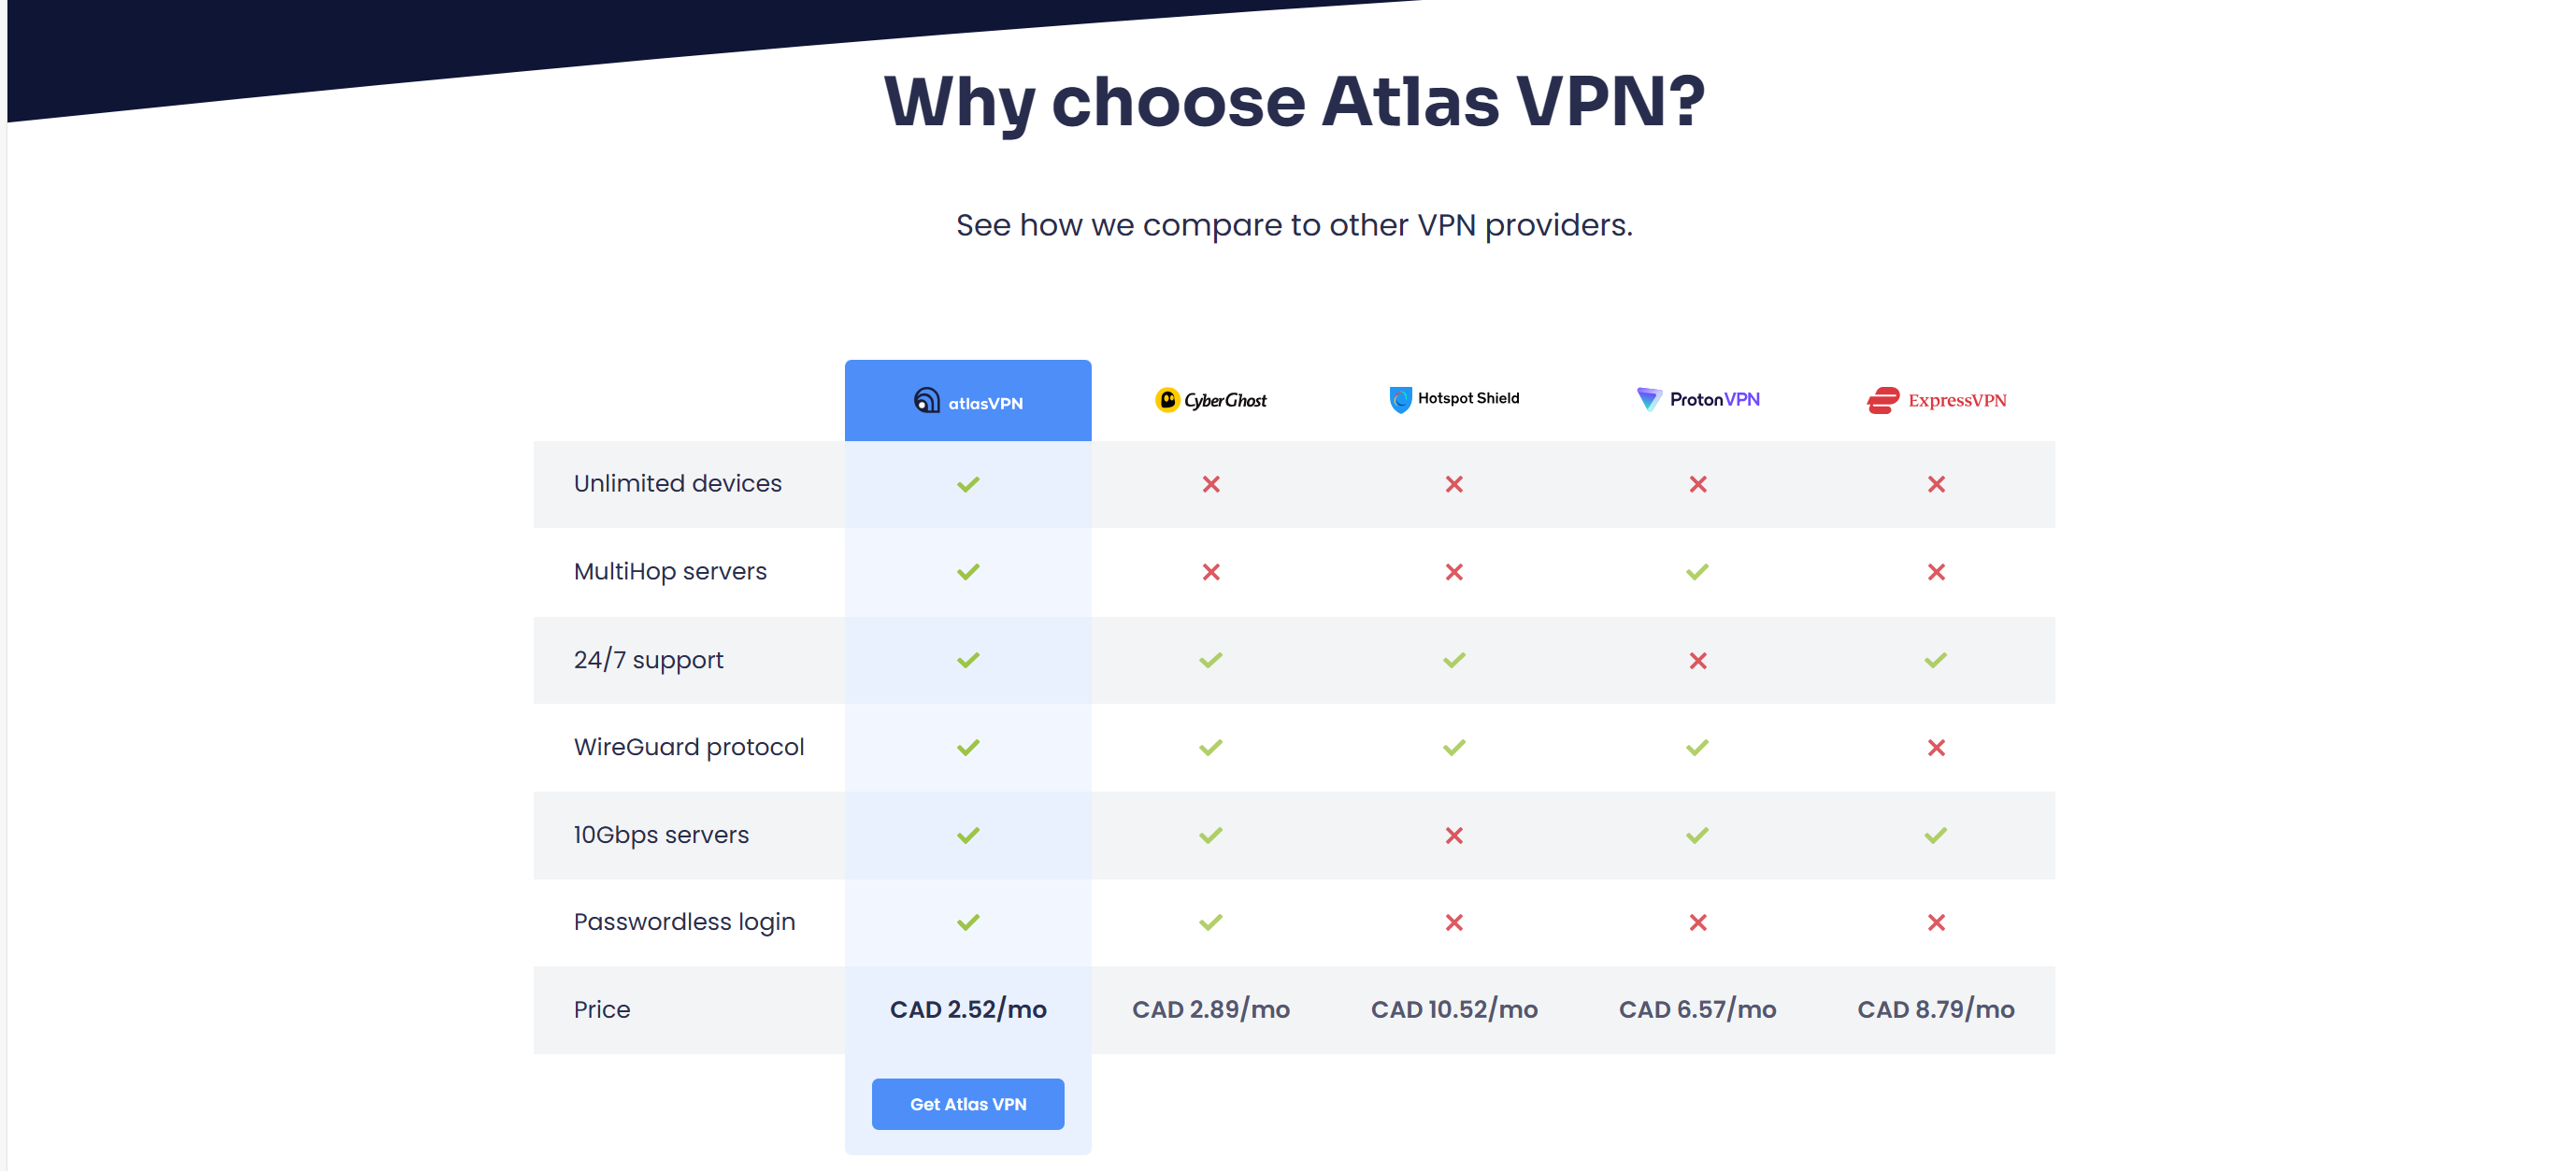 Why choose atlas VPN